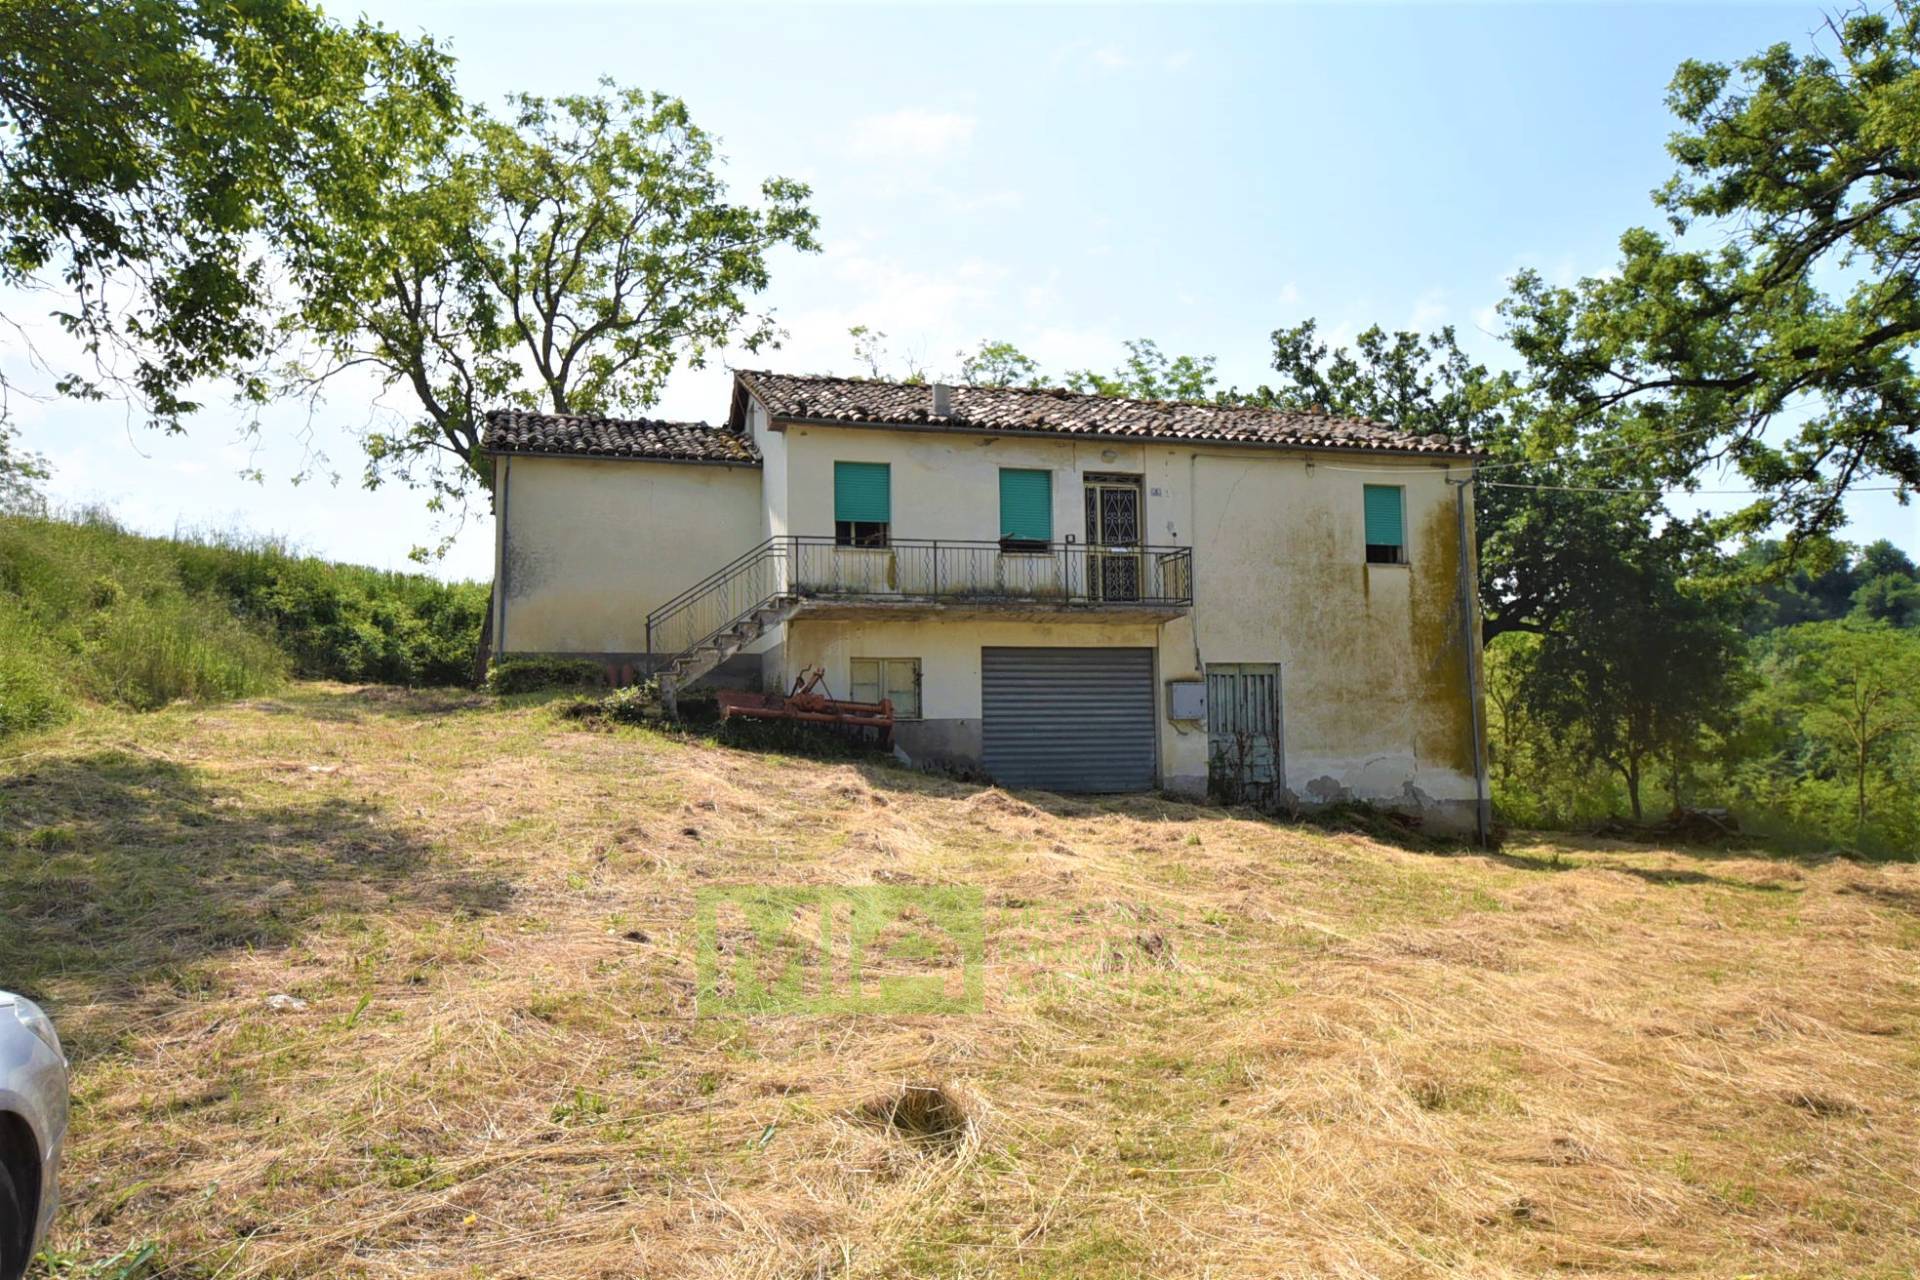 Rustico / Casale in vendita a Camporotondo di Fiastrone, 7 locali, zona Località: contradaColvenale, prezzo € 100.000 | PortaleAgenzieImmobiliari.it